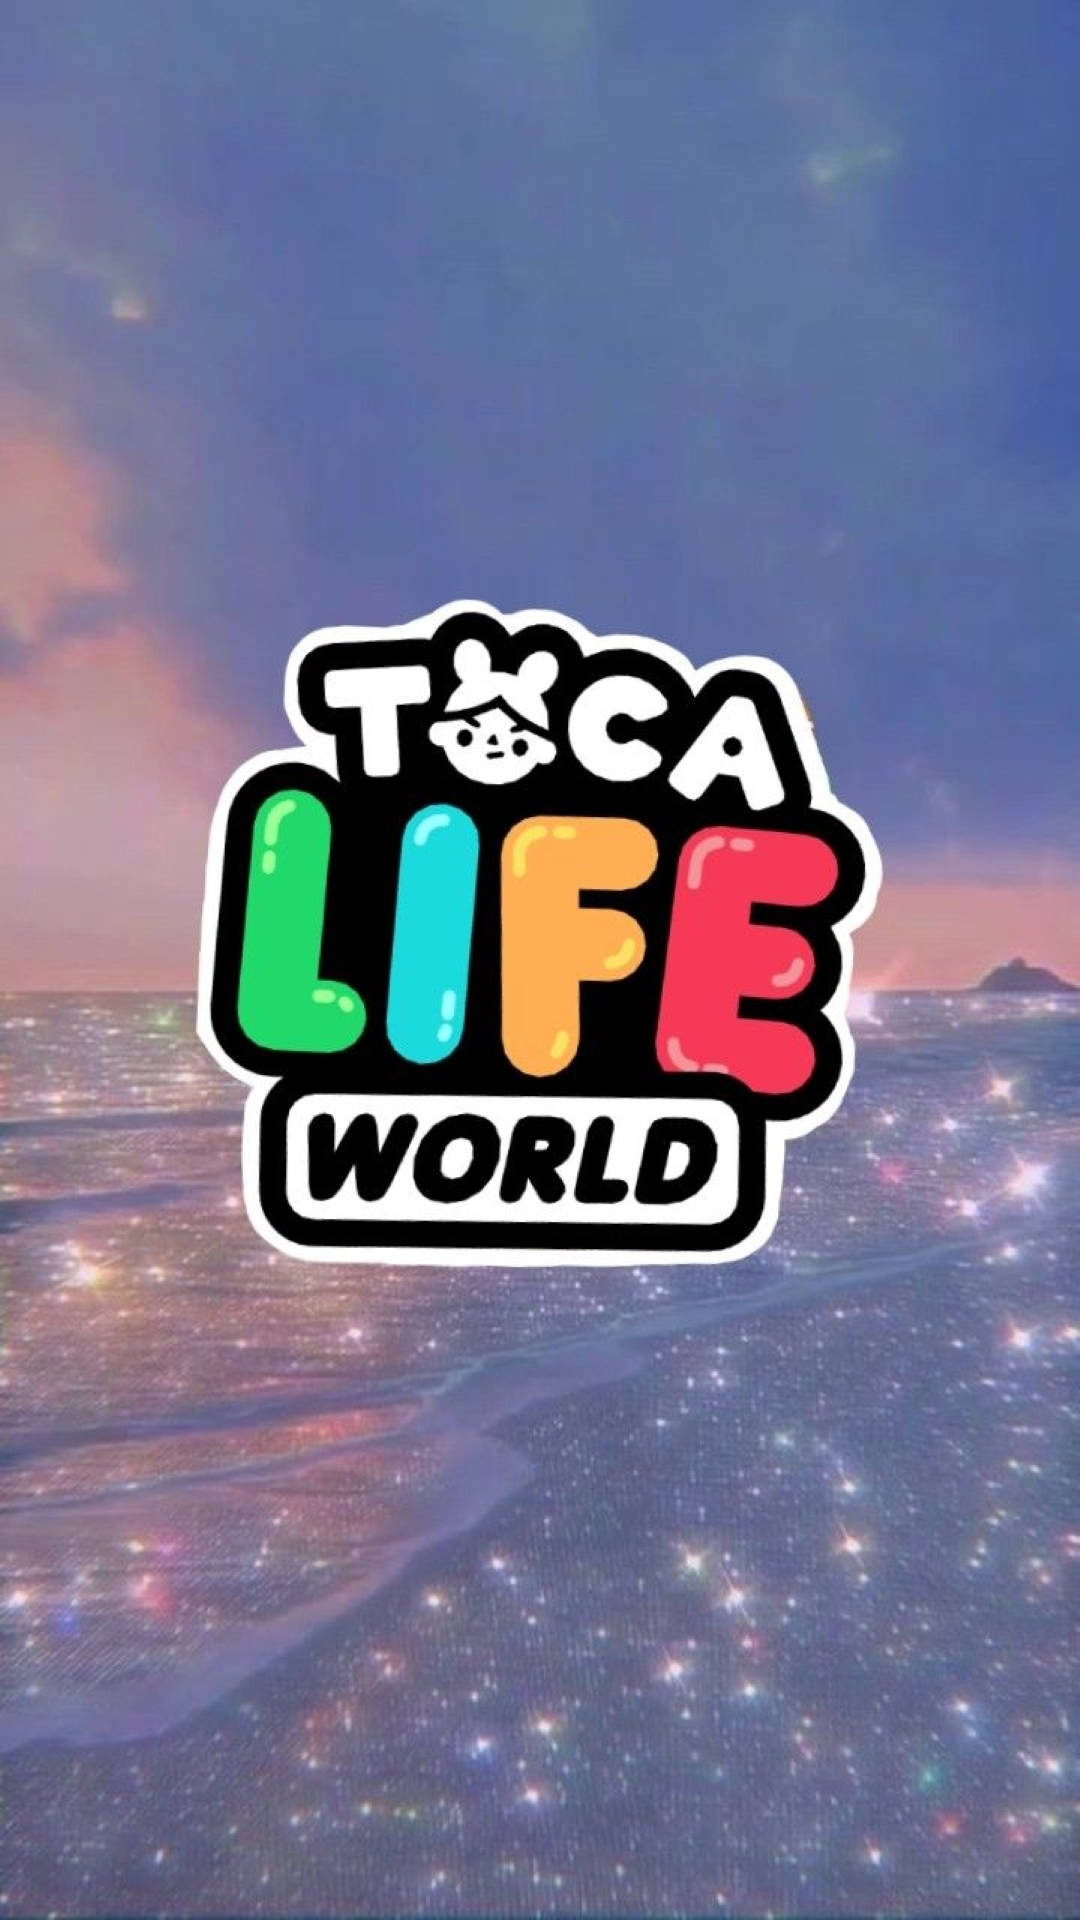 Toca Boca wallpapers là sự lựa chọn tuyệt vời dành cho những ai yêu thích thế giới Toca Boca. Với đầy đủ các nhân vật và hình ảnh đẹp mắt, Toca Boca wallpapers sẽ khiến cho màn hình của bạn trở nên sống động hơn bao giờ hết!